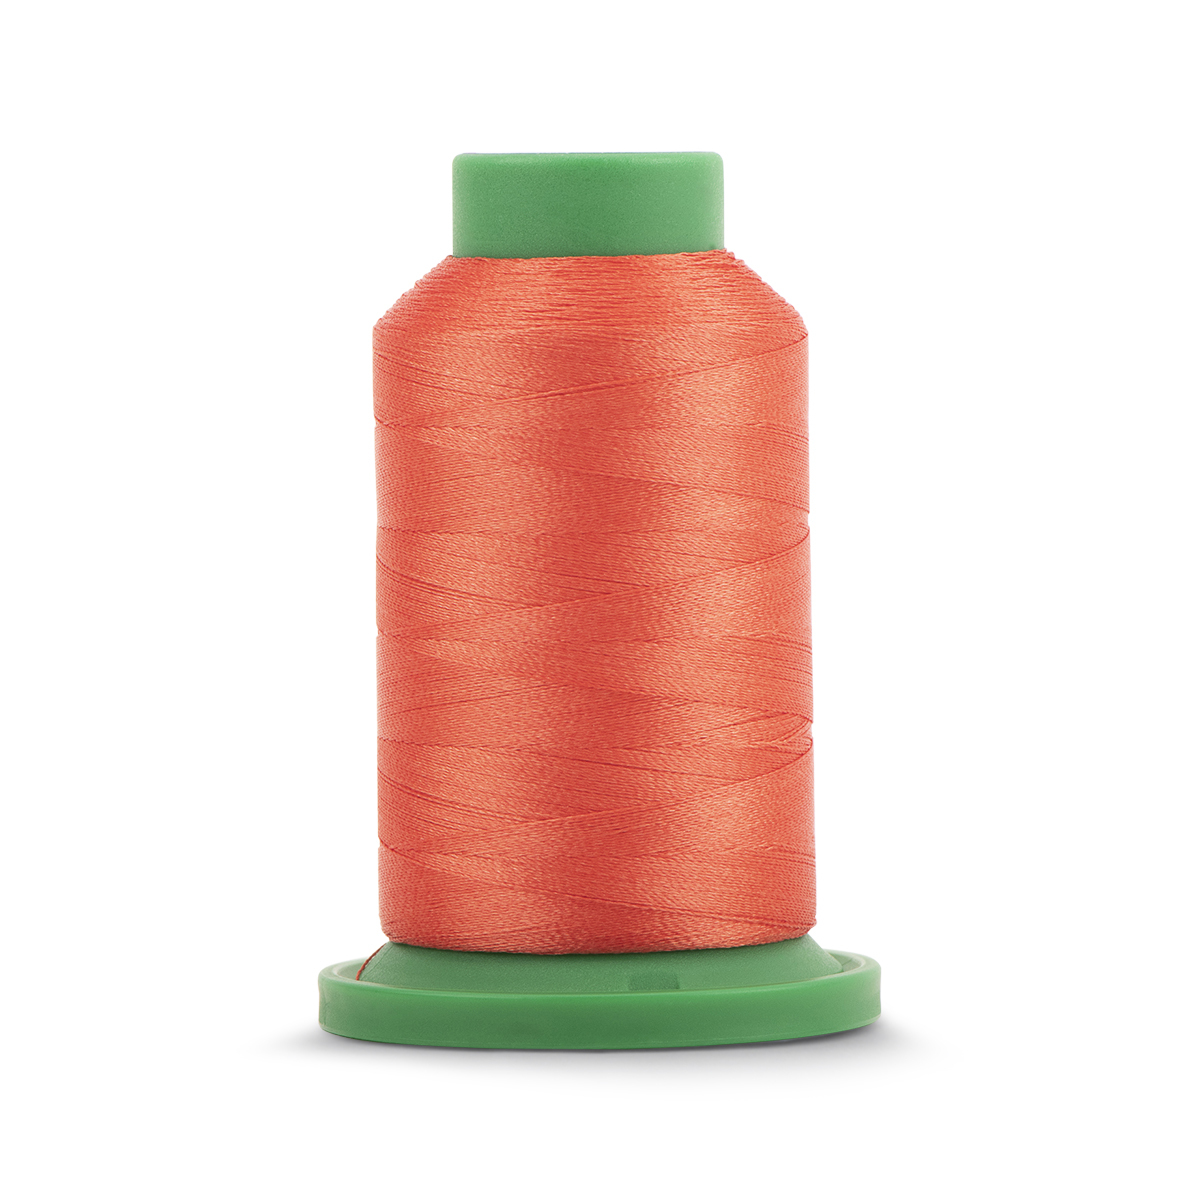 Isacord Embroidery Thread 1000m Spool – 6011 Tamarack